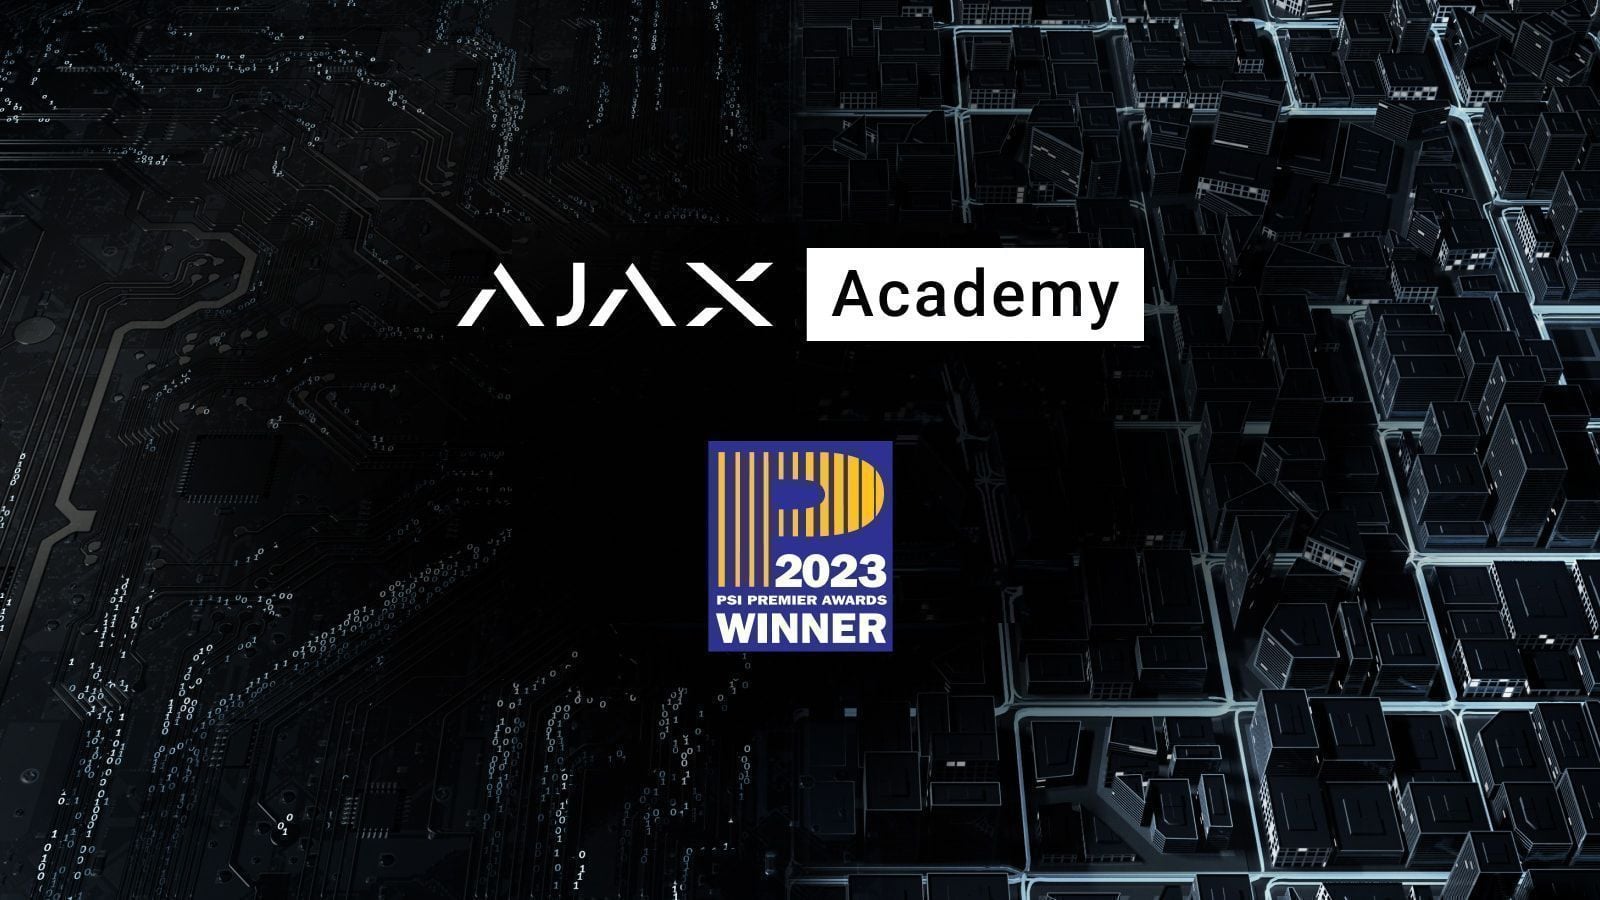 Ajax Academy gewinnt PSI Premier Awards 2023 als Hersteller-Trainingsprogramm des Jahres